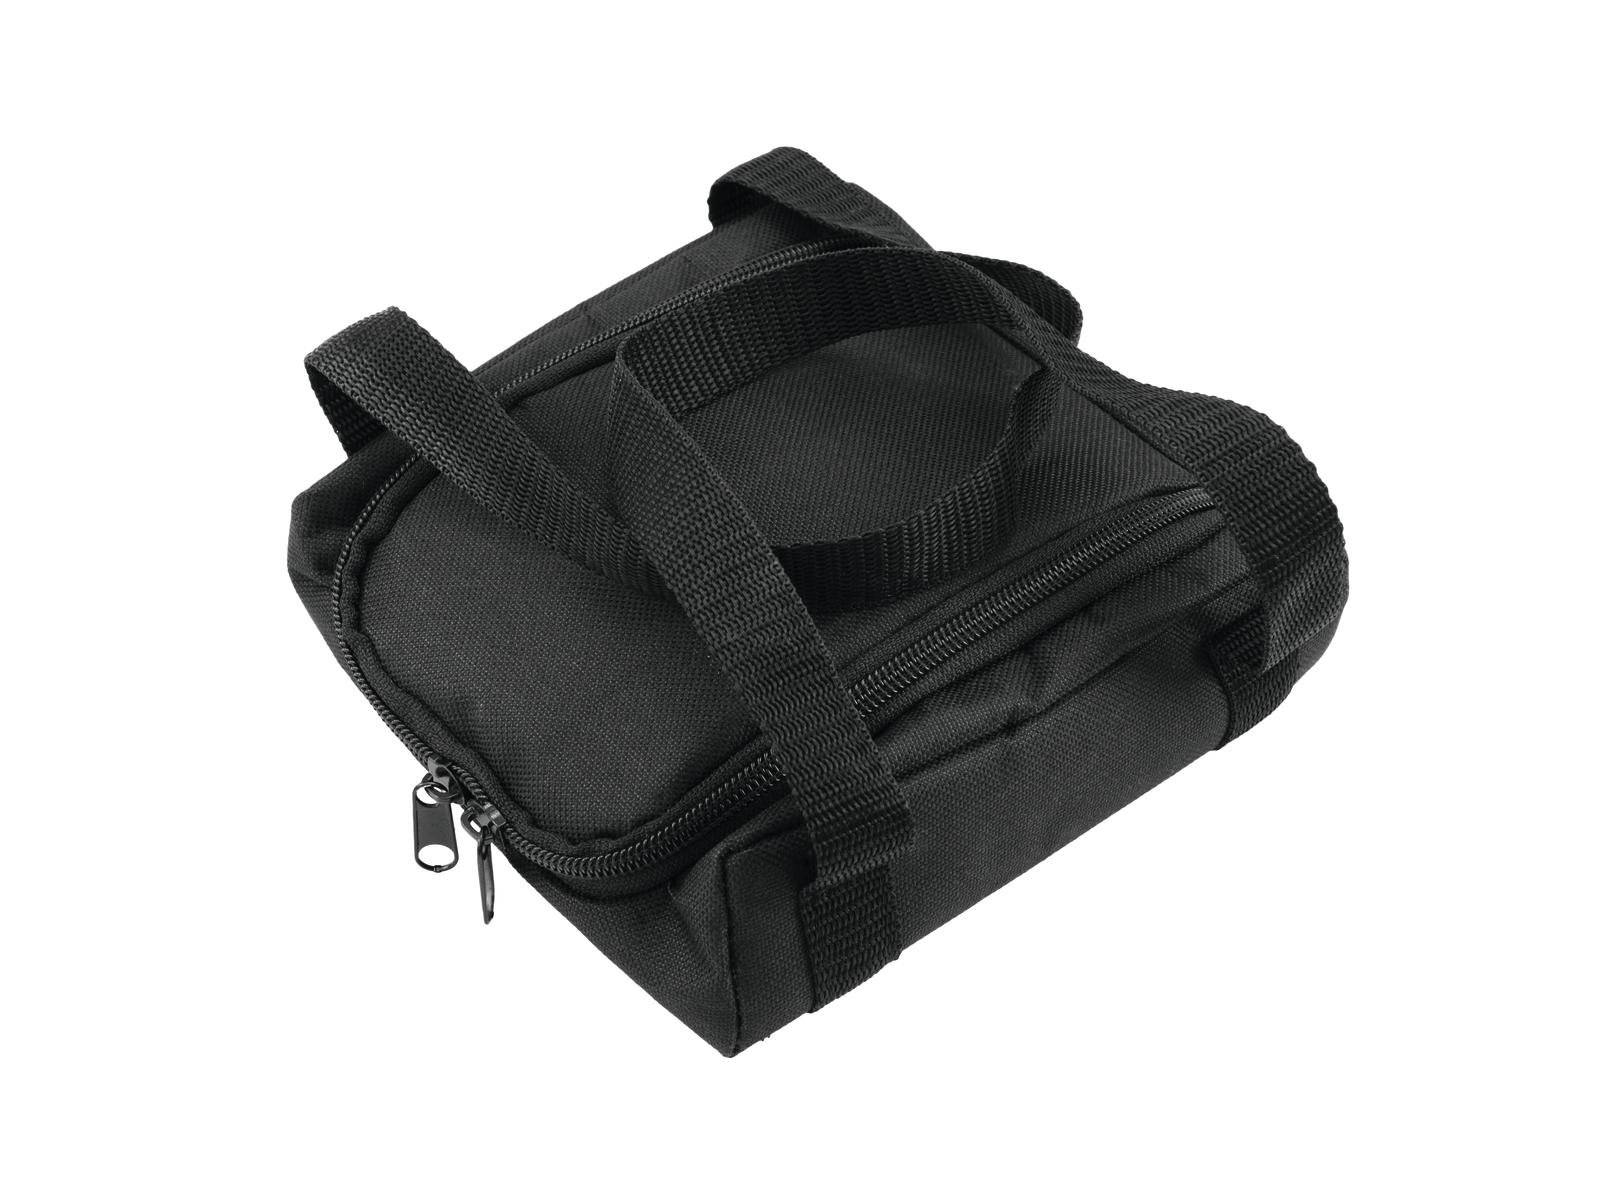 Softbag SB-50 univerzální přepravní taška | Obrázok 1 | eplay.sk